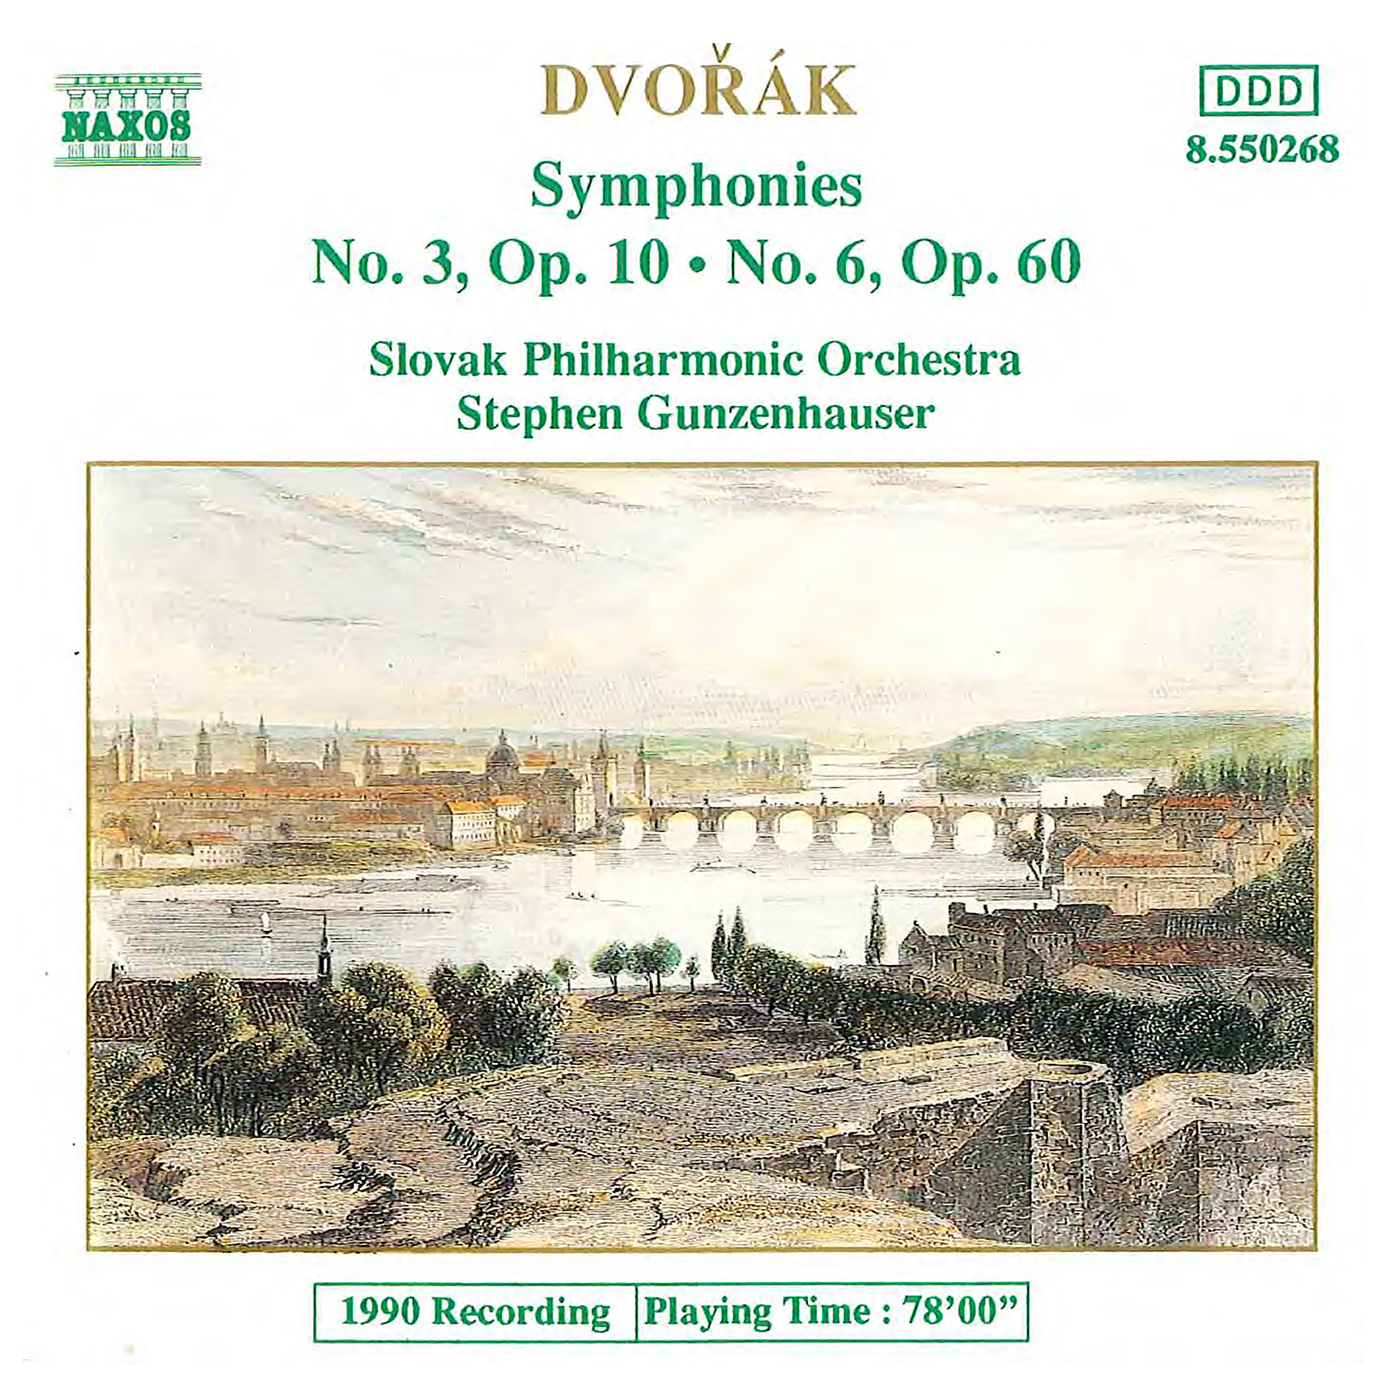 DVORAK: Symphonies Nos. 3 and 6